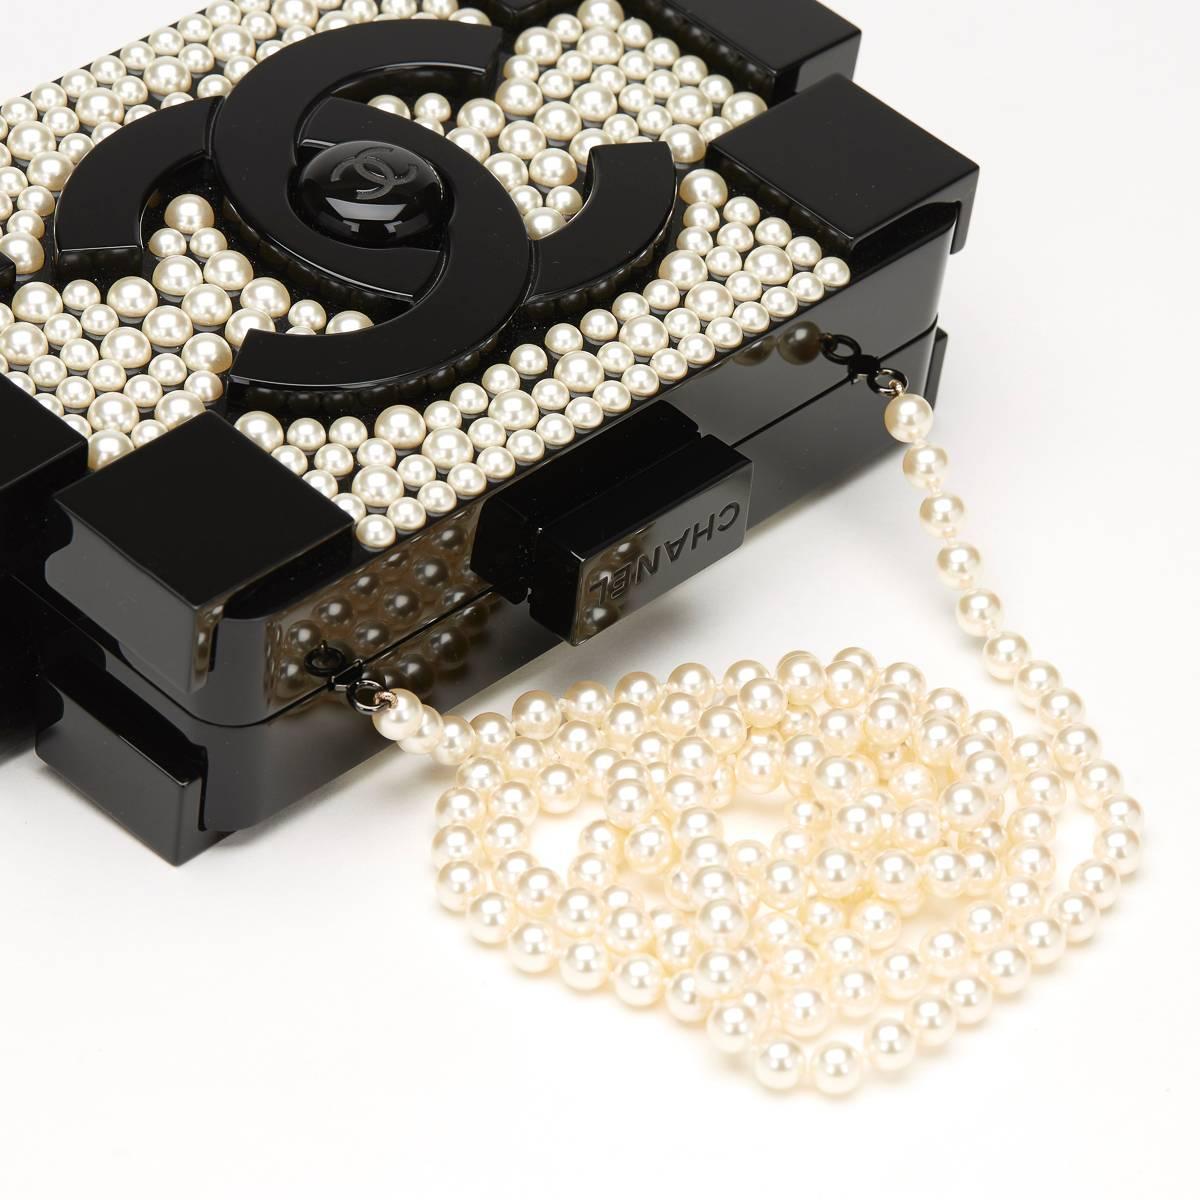 Women's 2014 Chanel Black Pearlized Plexiglass Lego Boy Clutch